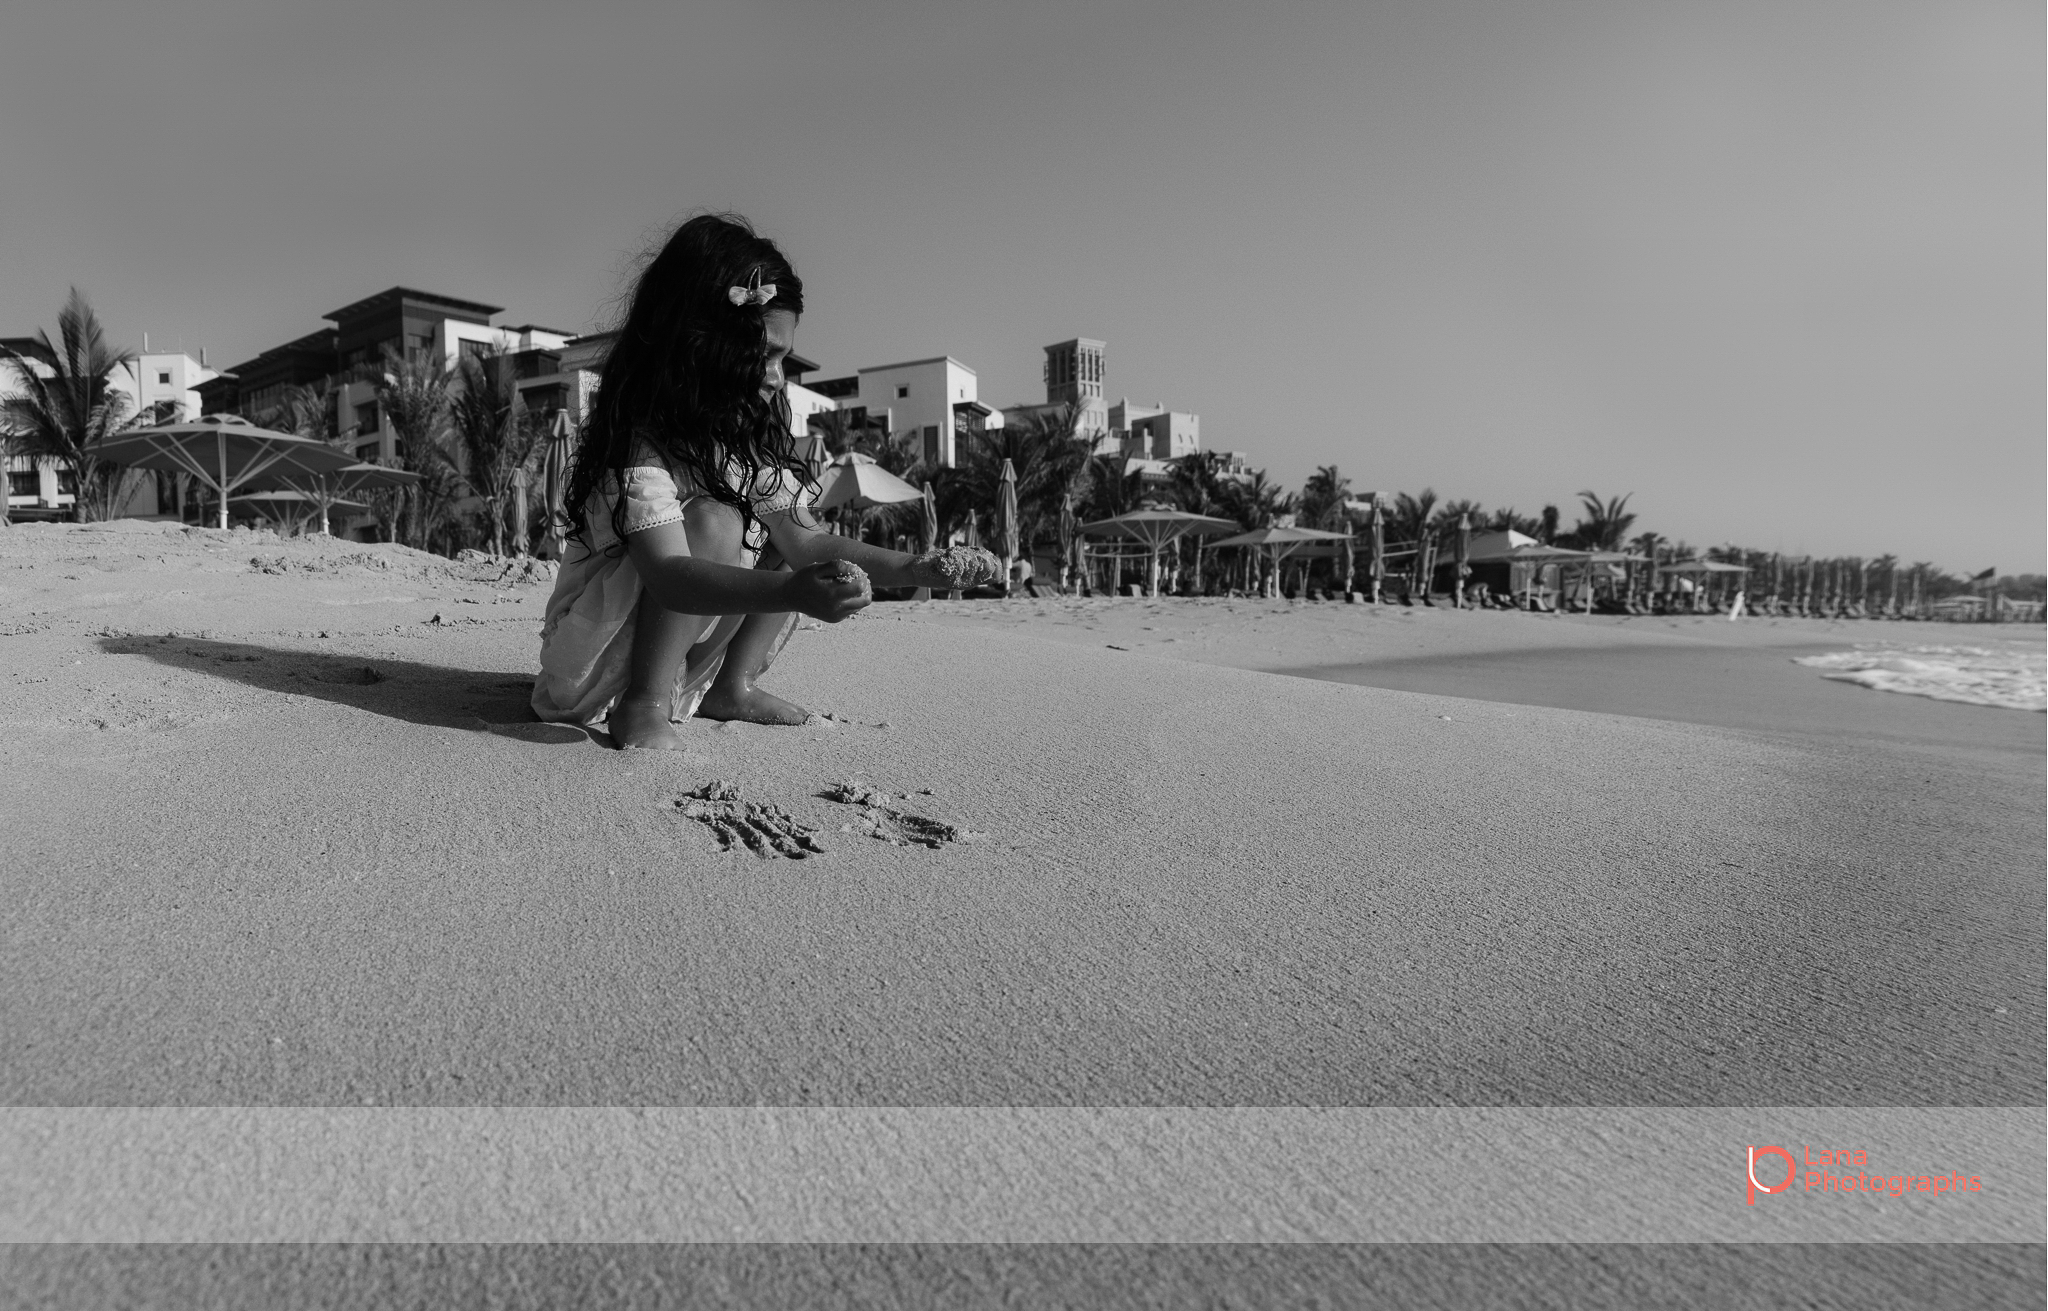  Lana Photographs Dubai Family Photography beach photoshoot little girl on the beach 